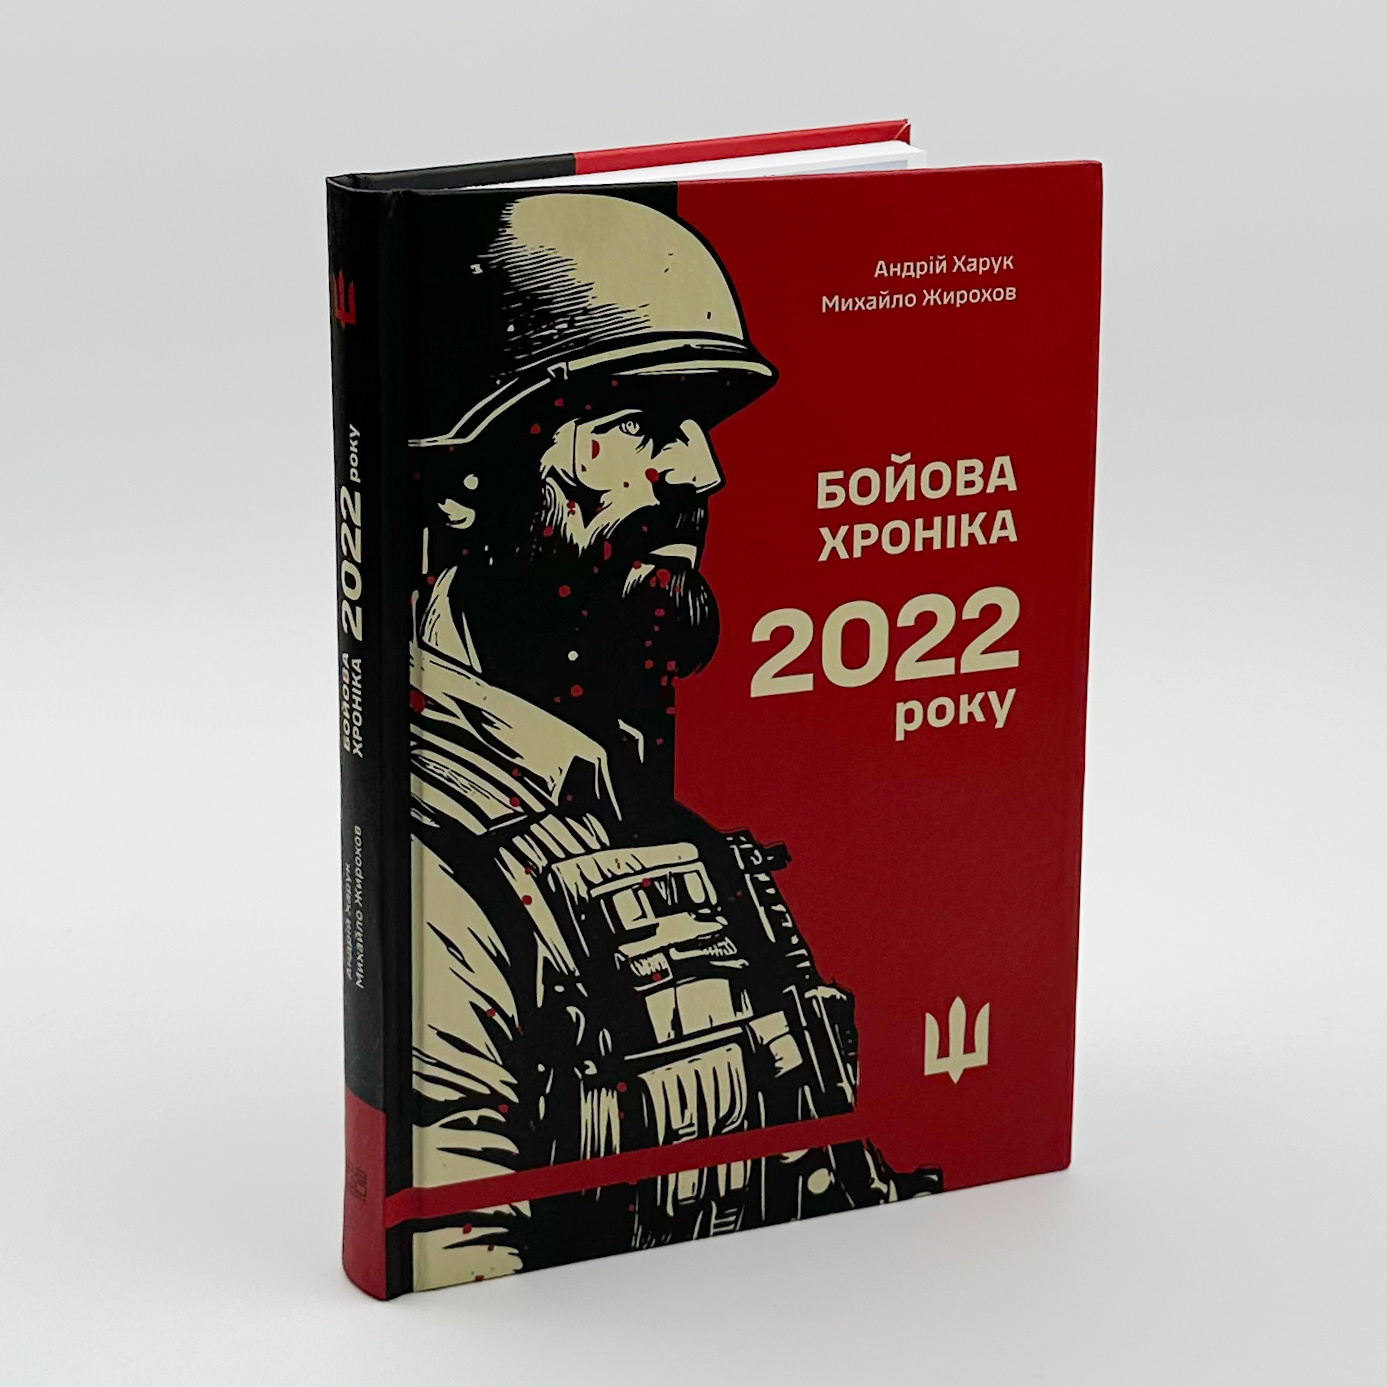 Бойова хроніка 2022 року. Автор — Михайло Жирохов, Андрій Харук. 